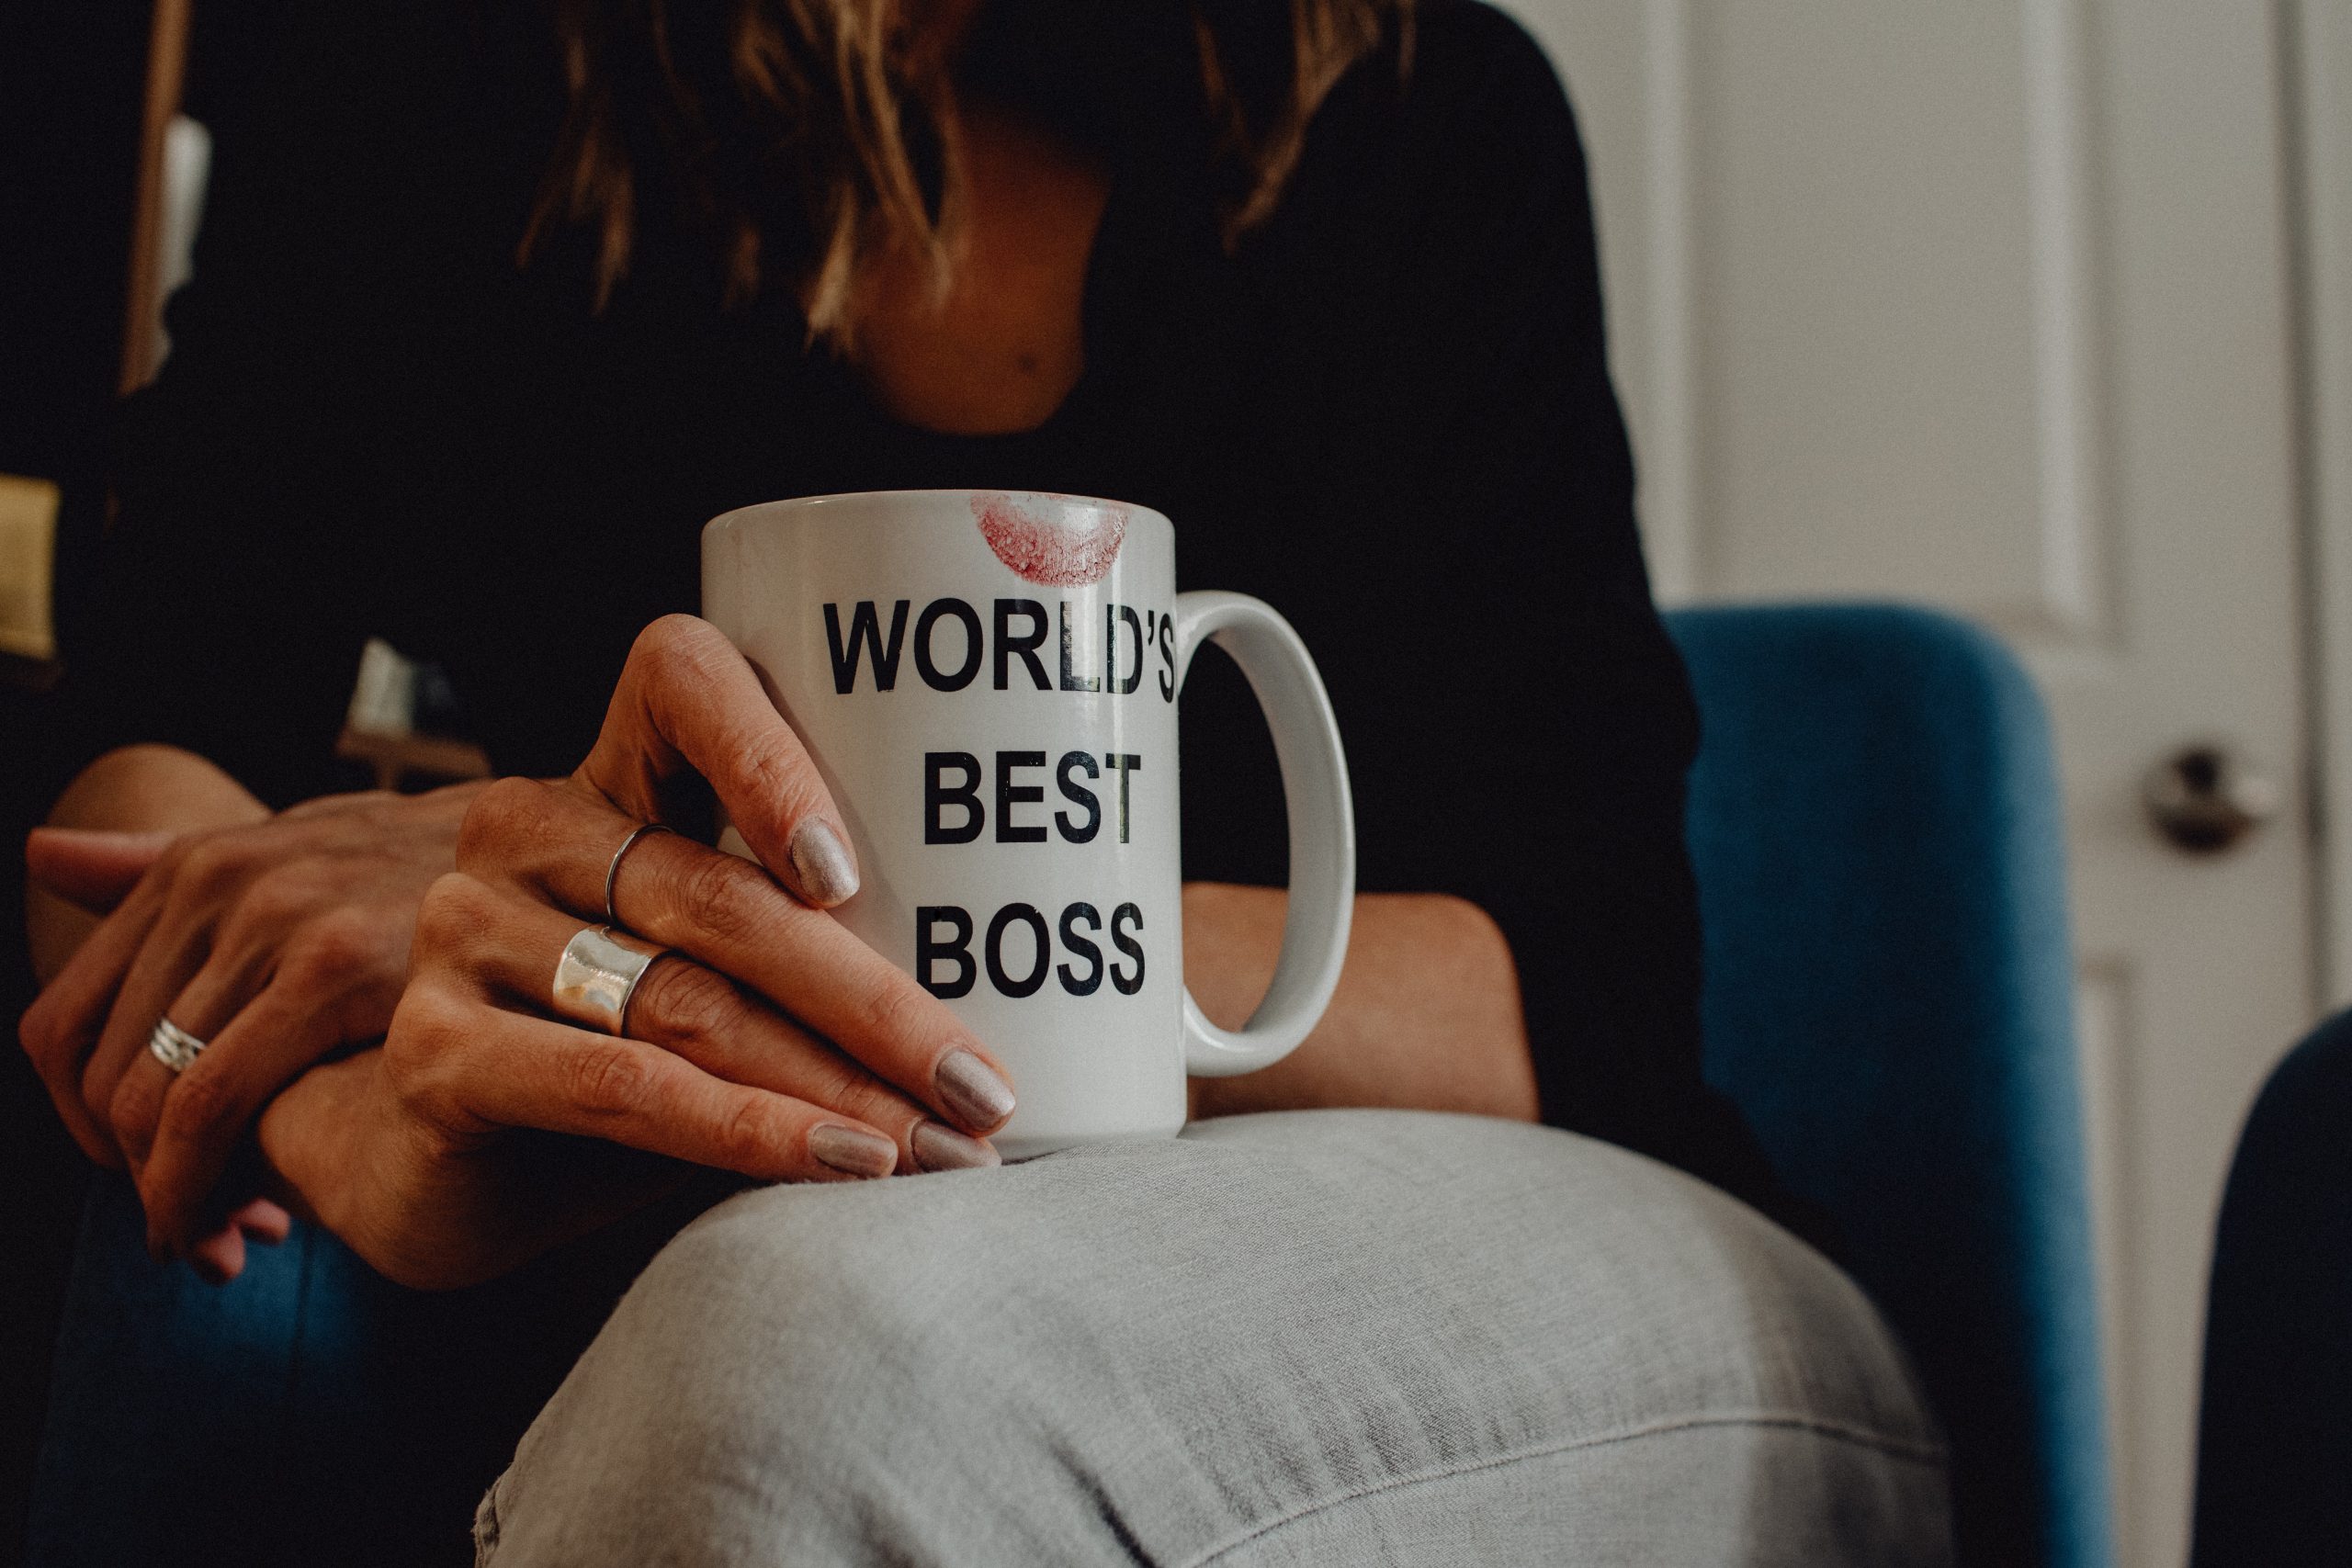 woman holding coffee mug "worlds best boss"